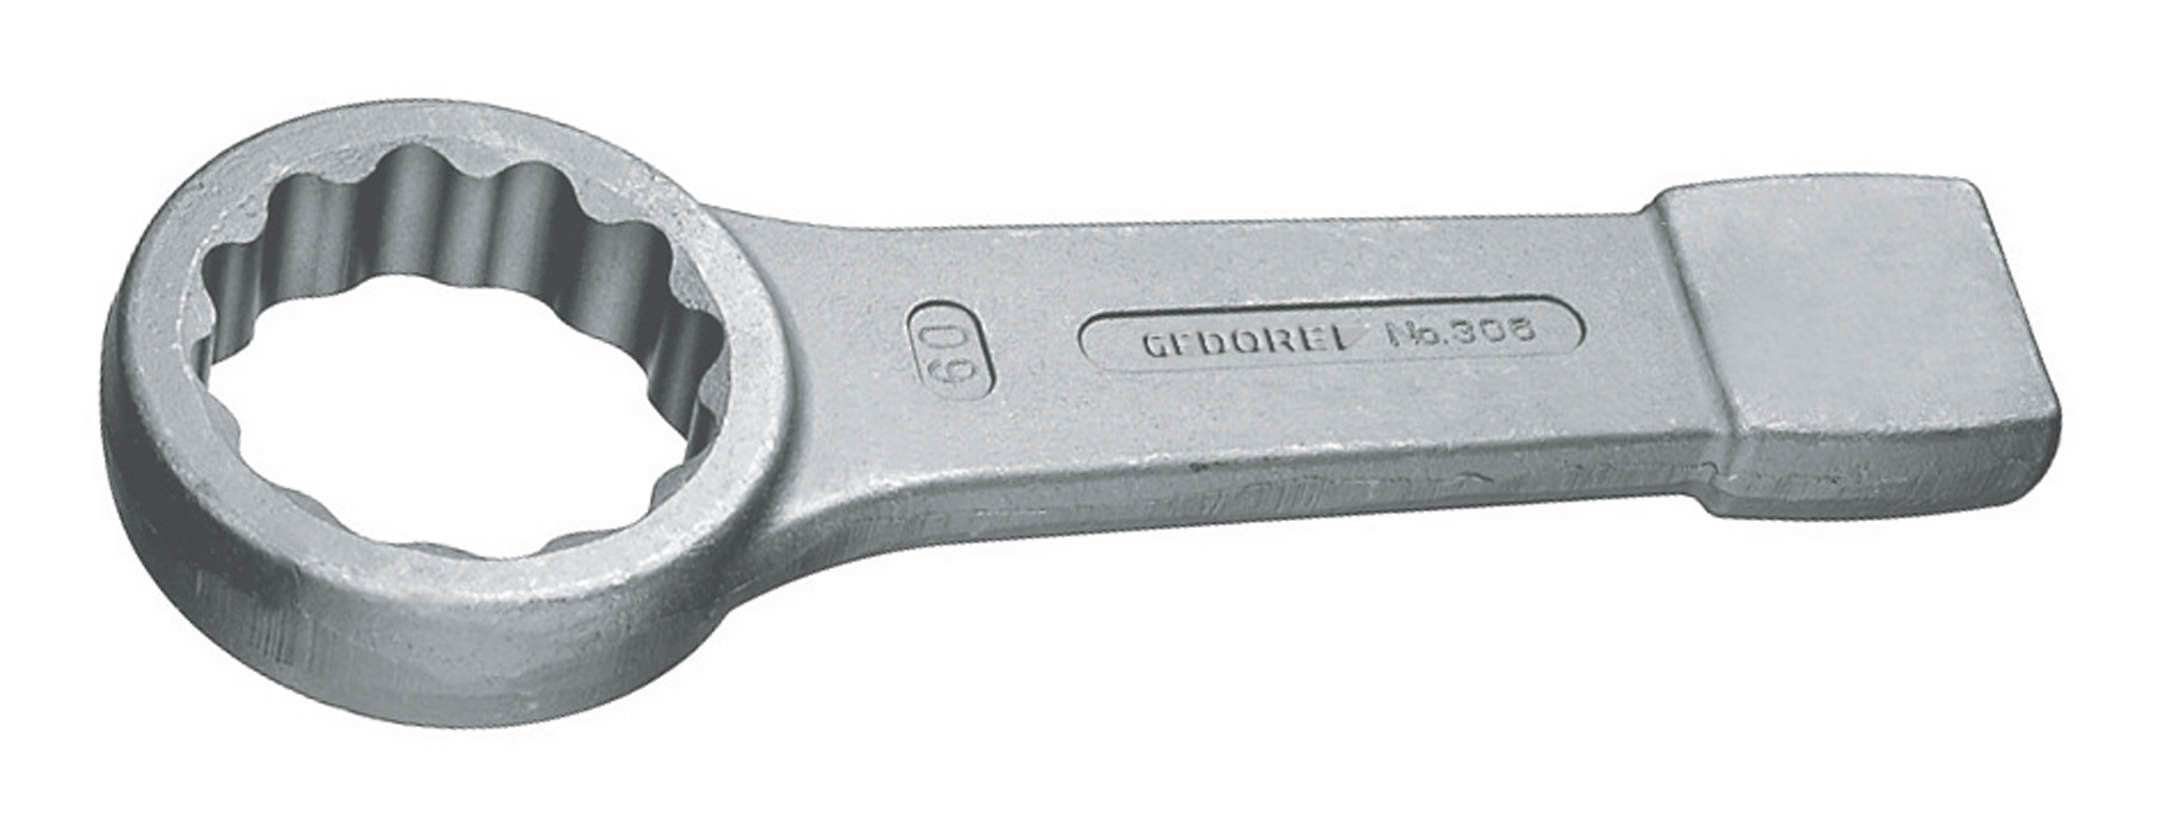 Gedore Ringschlüssel, Schlag DIN7444 90 mm